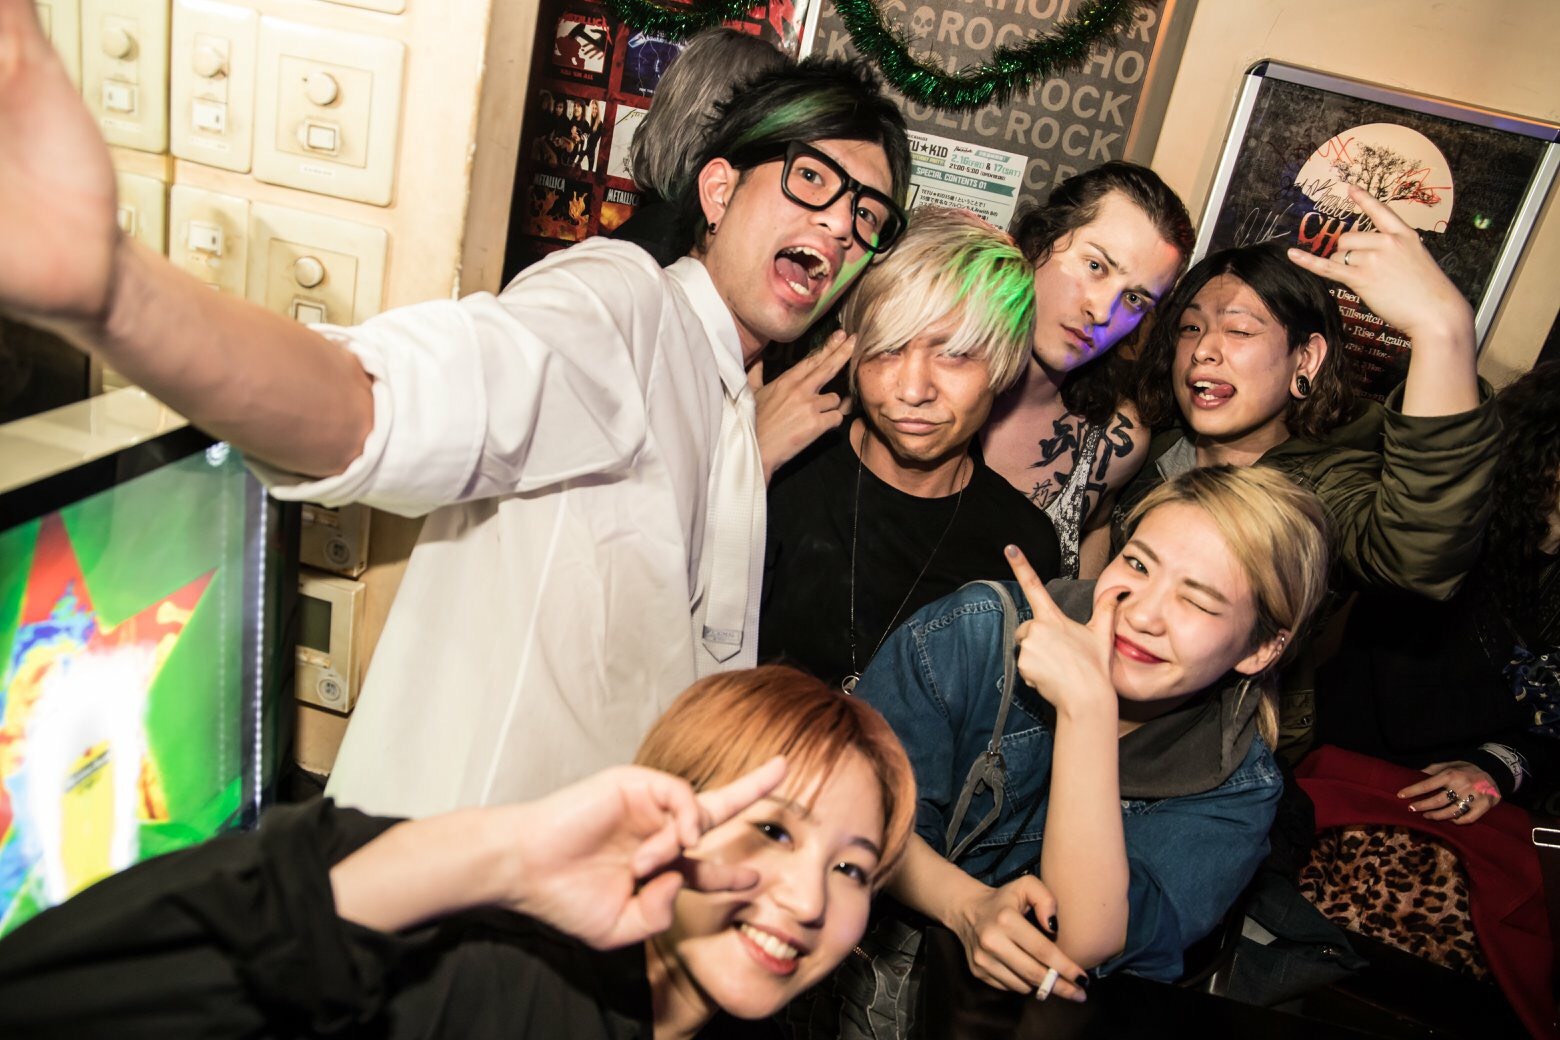 https://bar-rockaholic.jp/shibuya/blog/04EE33BA-058B-4EDA-875F-728F5CA60776.jpeg